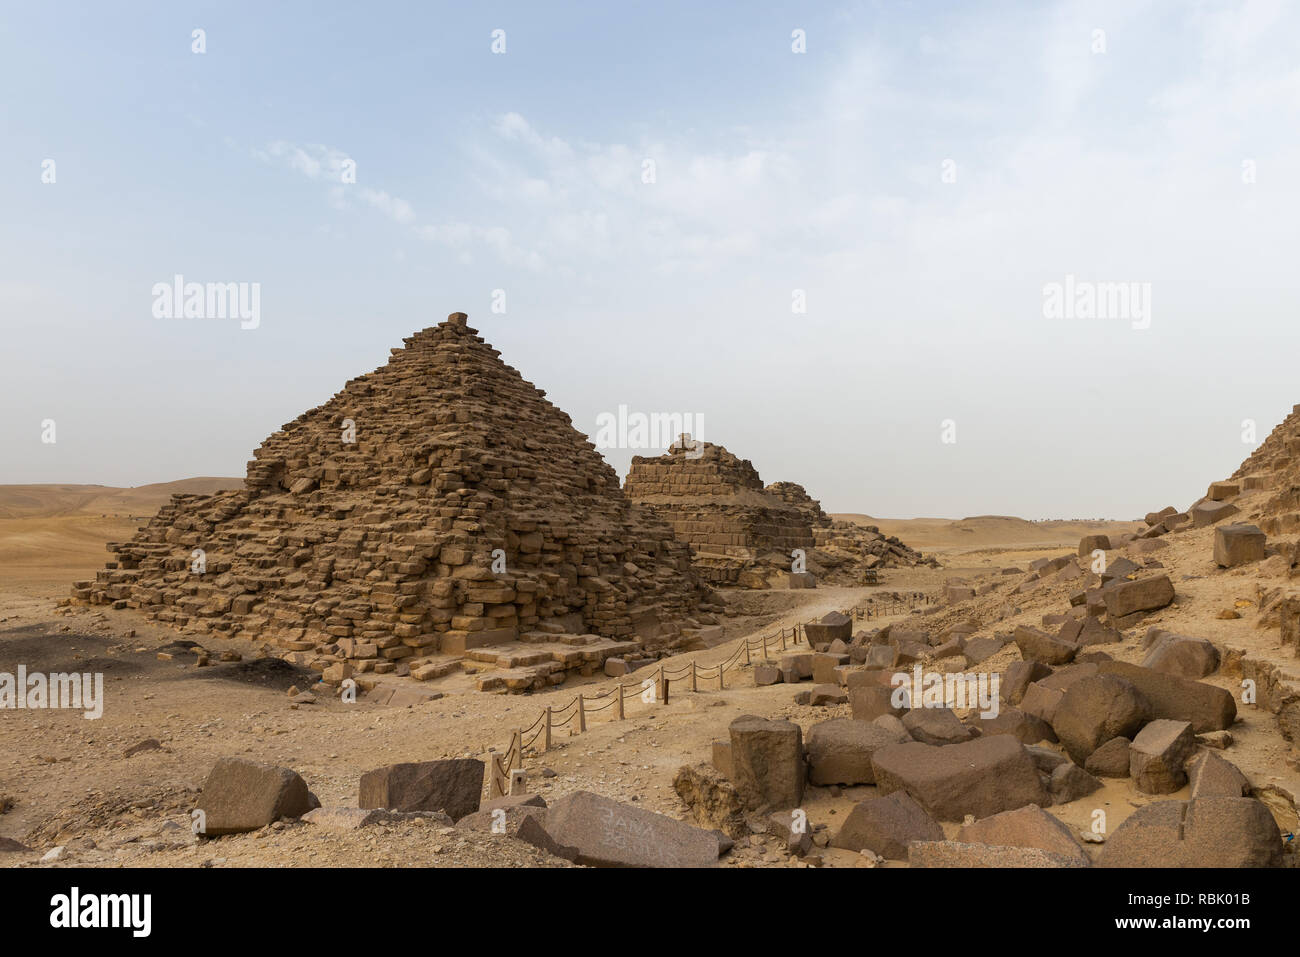 Les Pyramides de reines Menkaourê, trois petites pyramides de reines sont situés du côté sud de la pyramide et, comme les autres banques, ils wer Banque D'Images